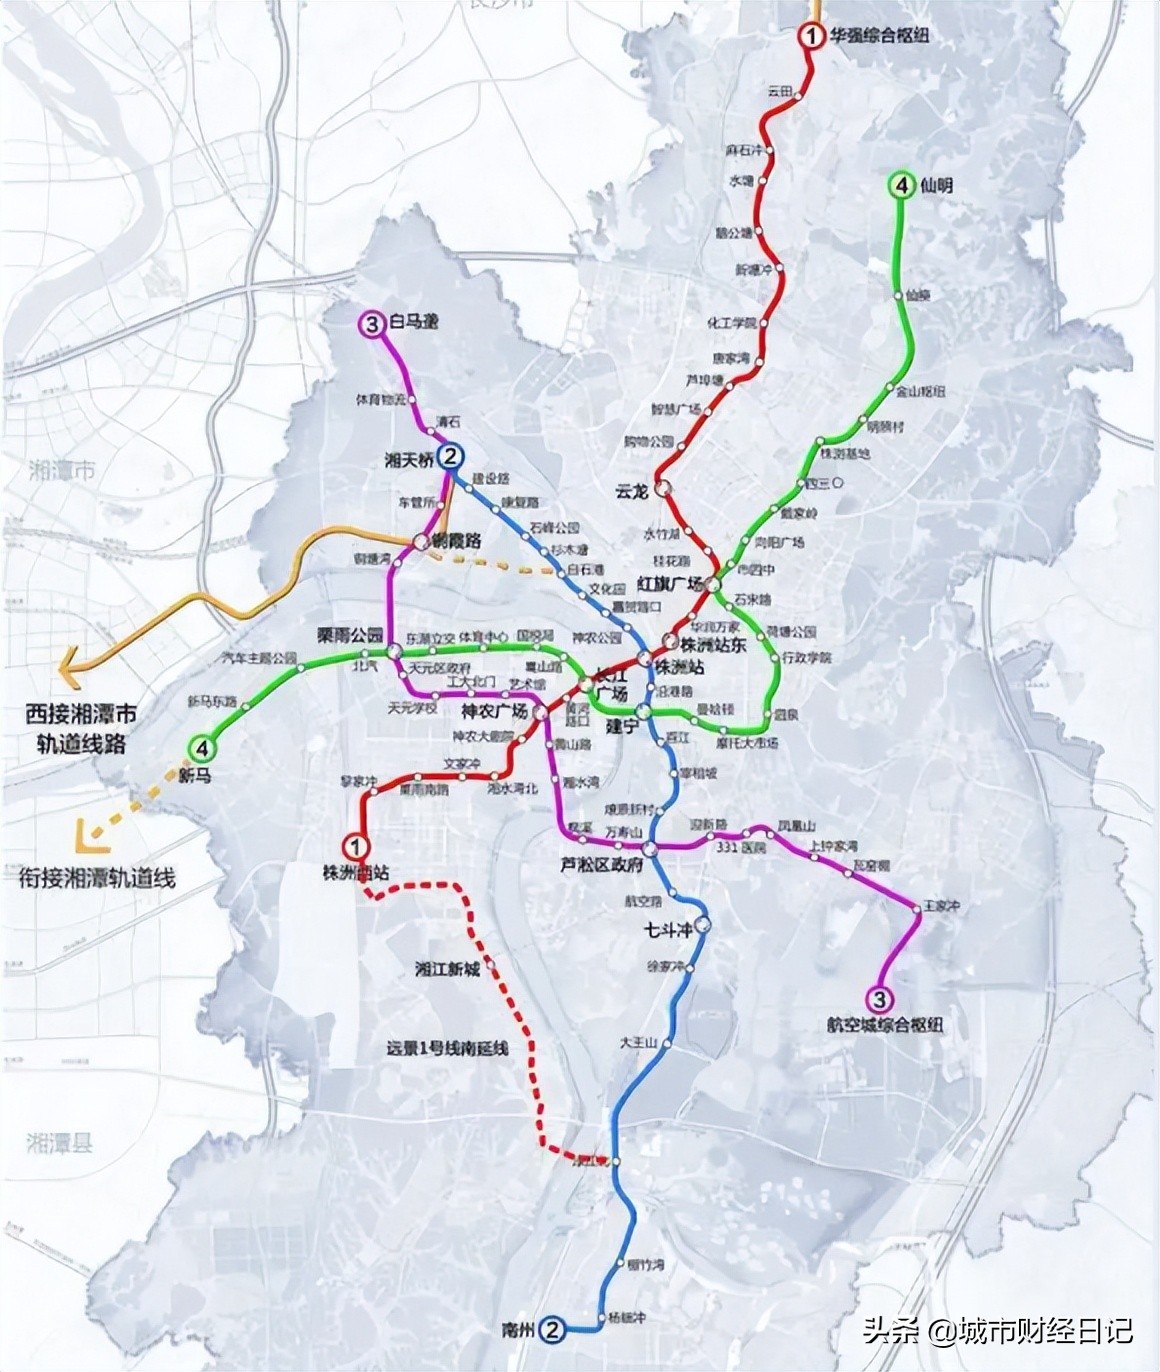 长沙轨道交通按下加速键，7条线路在建，总里程超过100公里-经济说网-第4附图